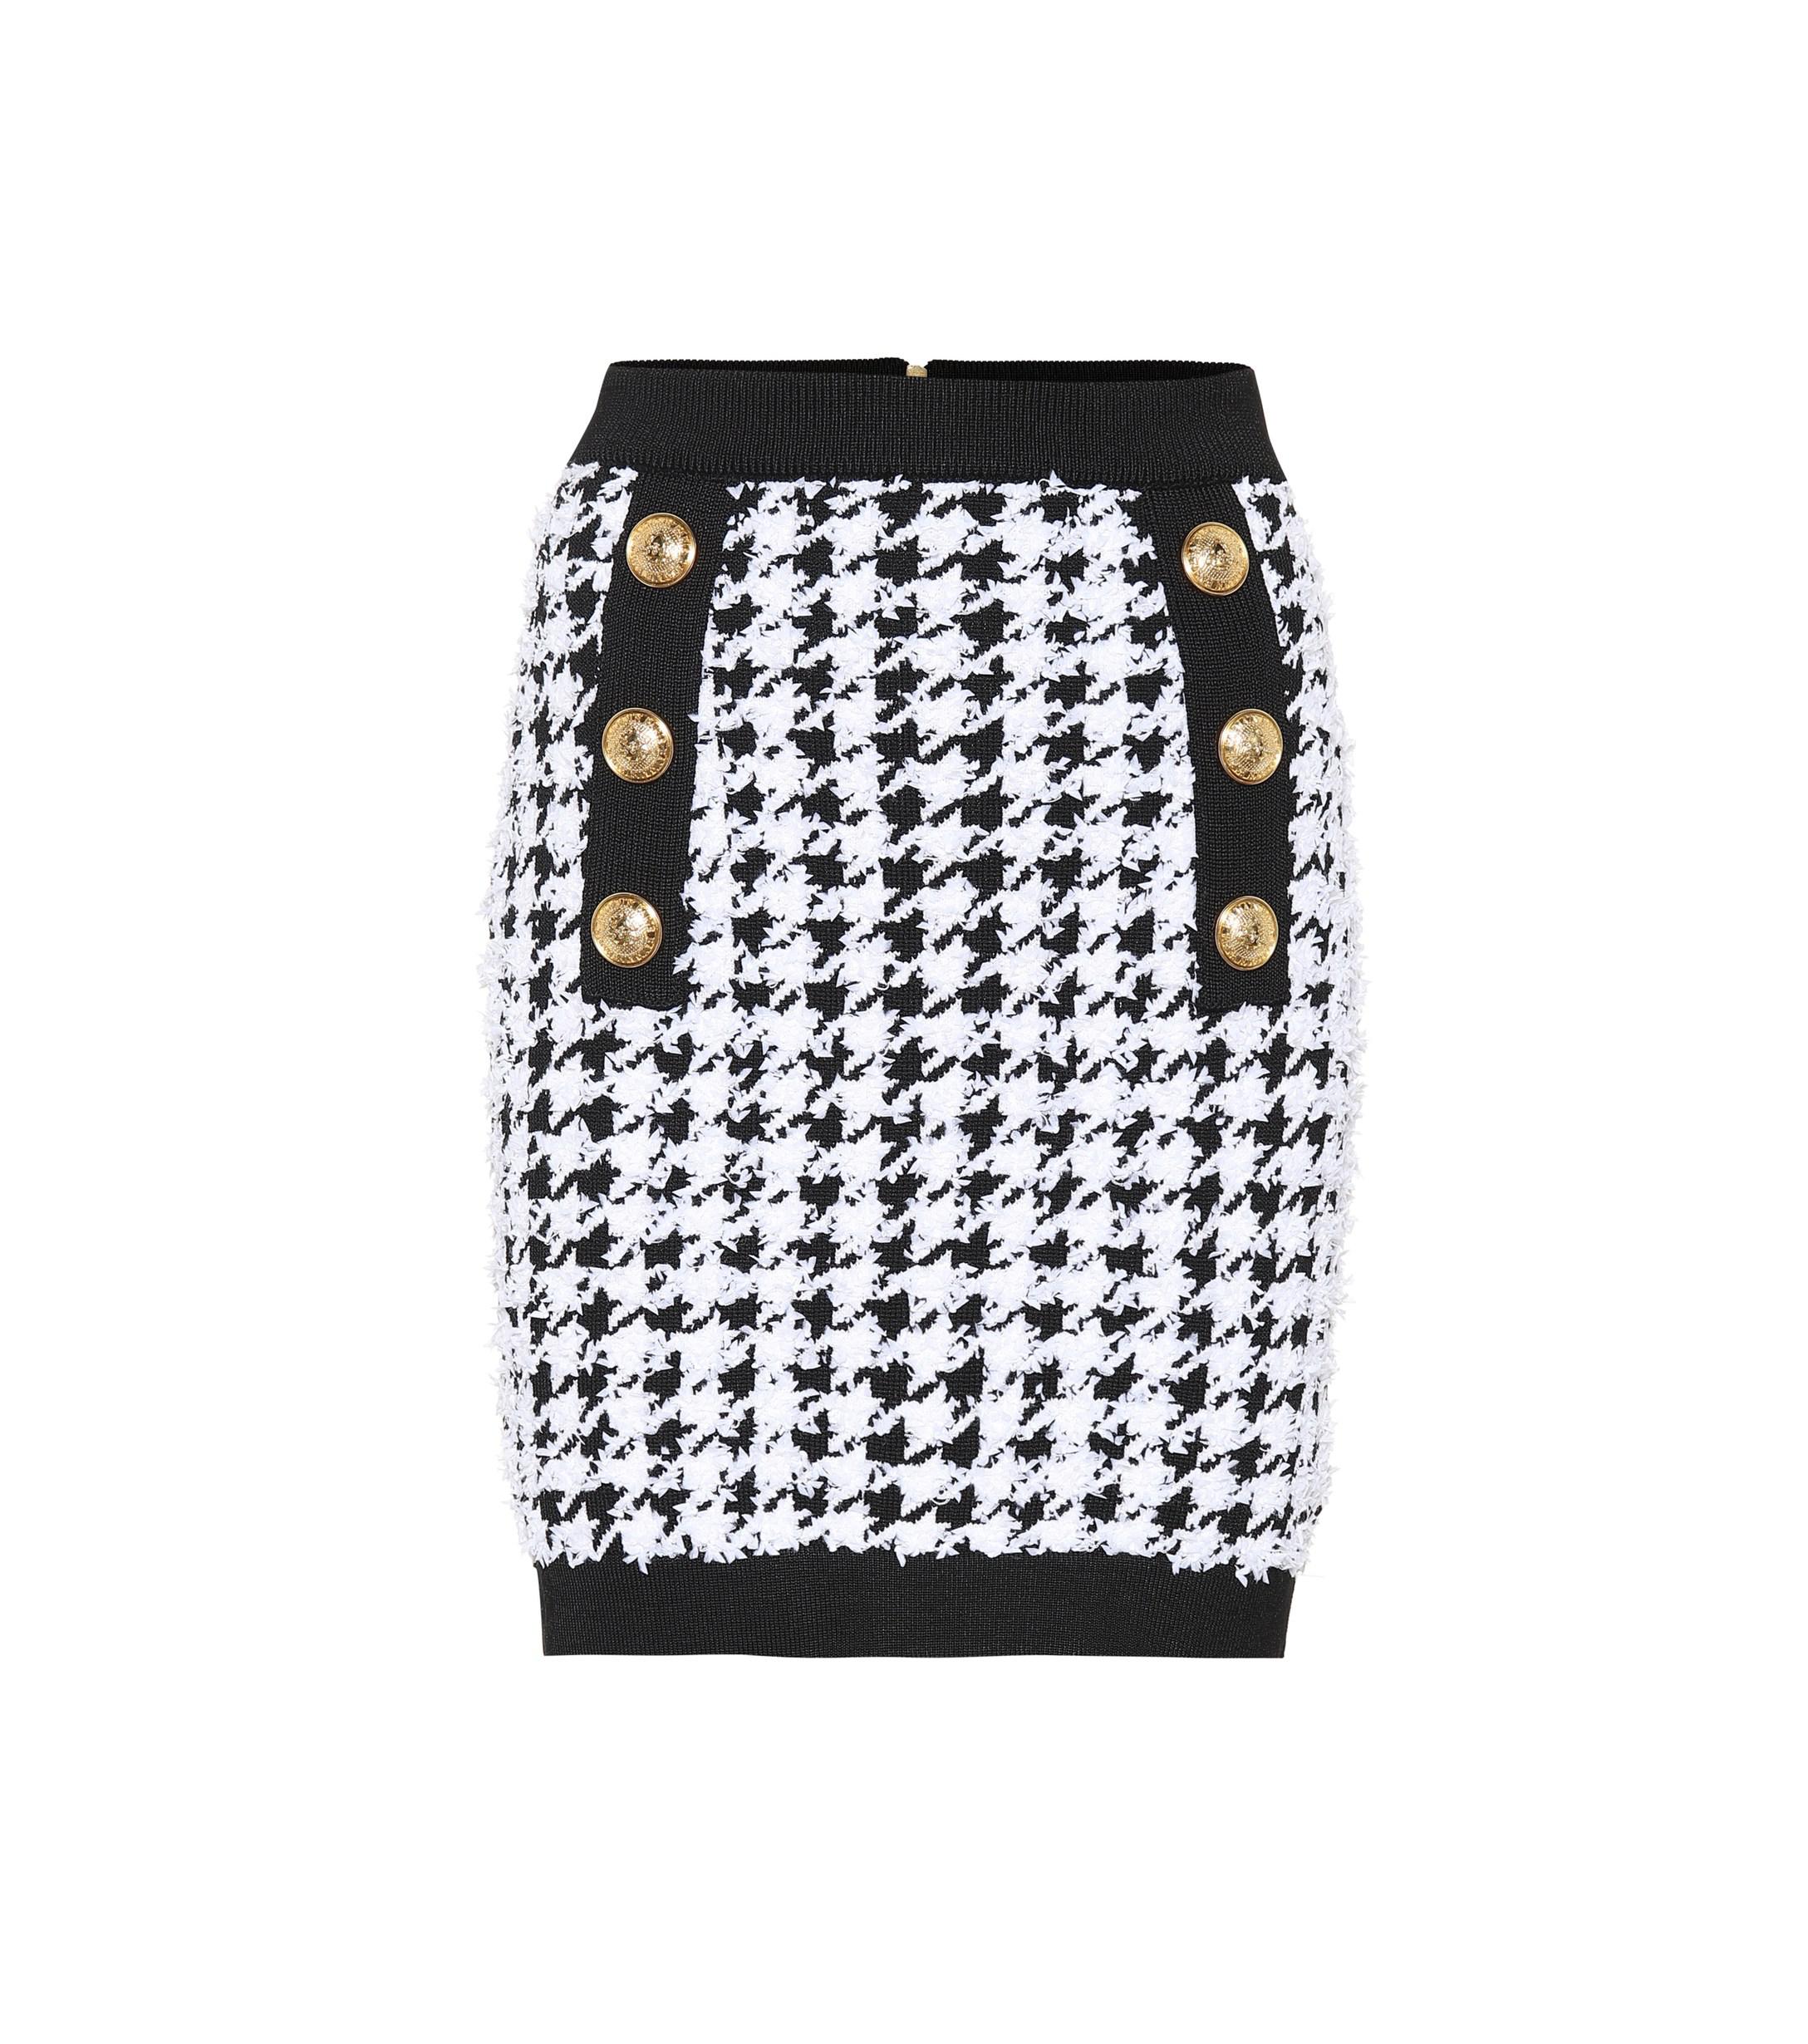 Balmain Houndstooth Mini Skirt in Black/White (Black) - Save 58% - Lyst